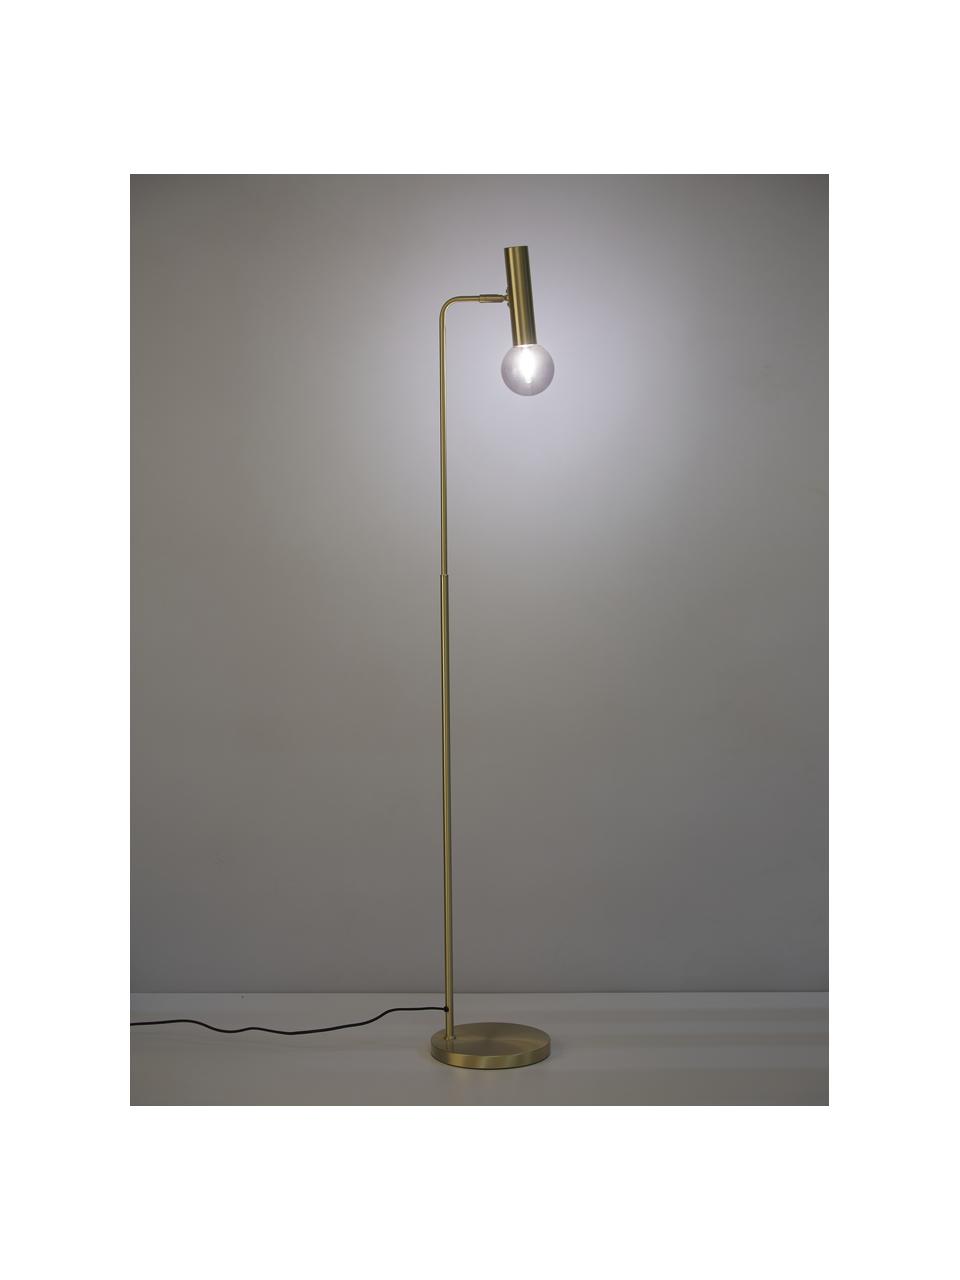 Leeslamp Wilson met glazen lampenkap, Lampenkap: glas, metaal, Lampvoet: vermessingd metaal, Messingkleurig, 28 x 151 cm